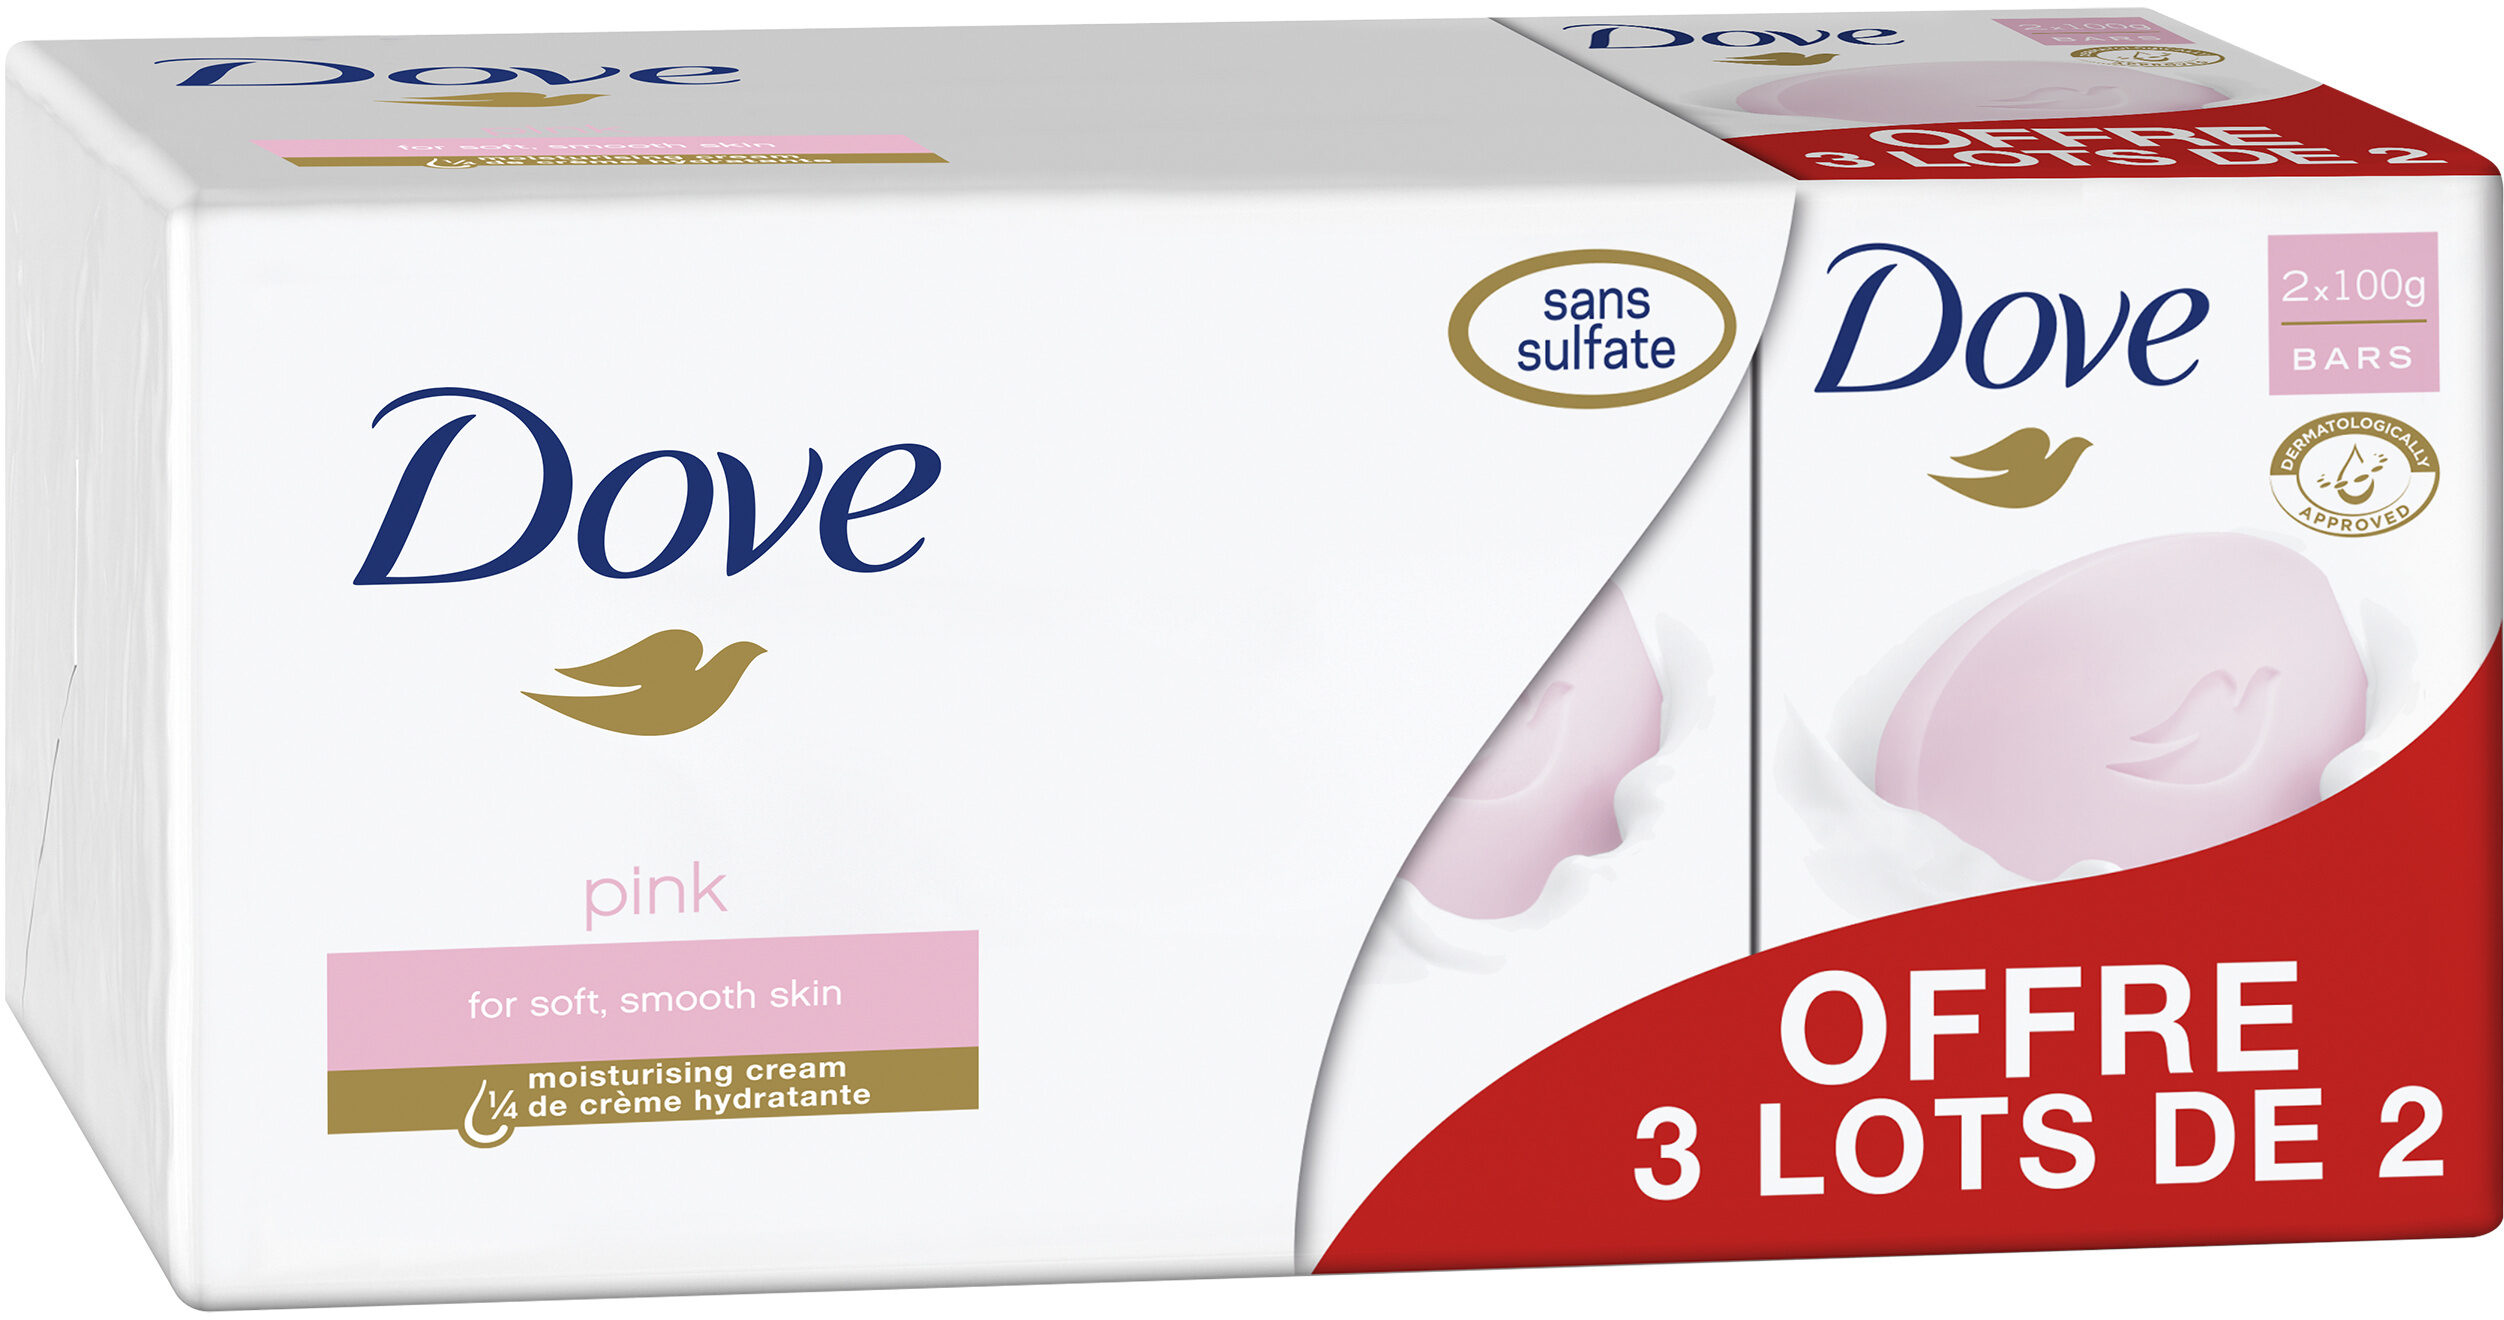 Dove Savon Pain de Toilette Pink Lot 2x100g - Produkto - fr